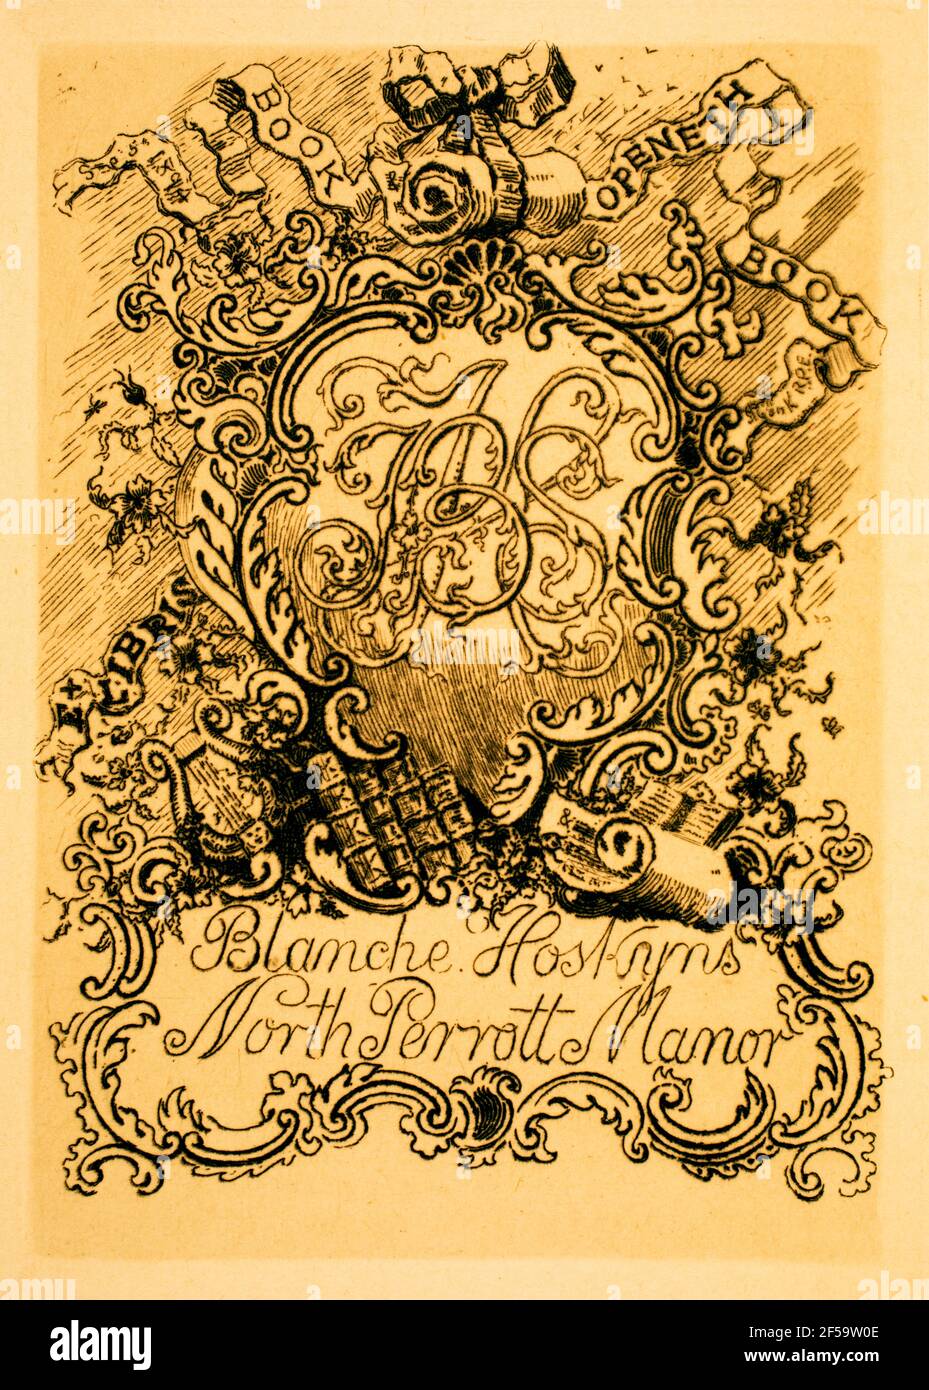 1894 Livre Openeth Livre monogramme héraldique gravé pour Blanche Hoskyns du Nord du Perrott Manor, par des graveurs britanniques, graveurs de bois et peintre W Banque D'Images